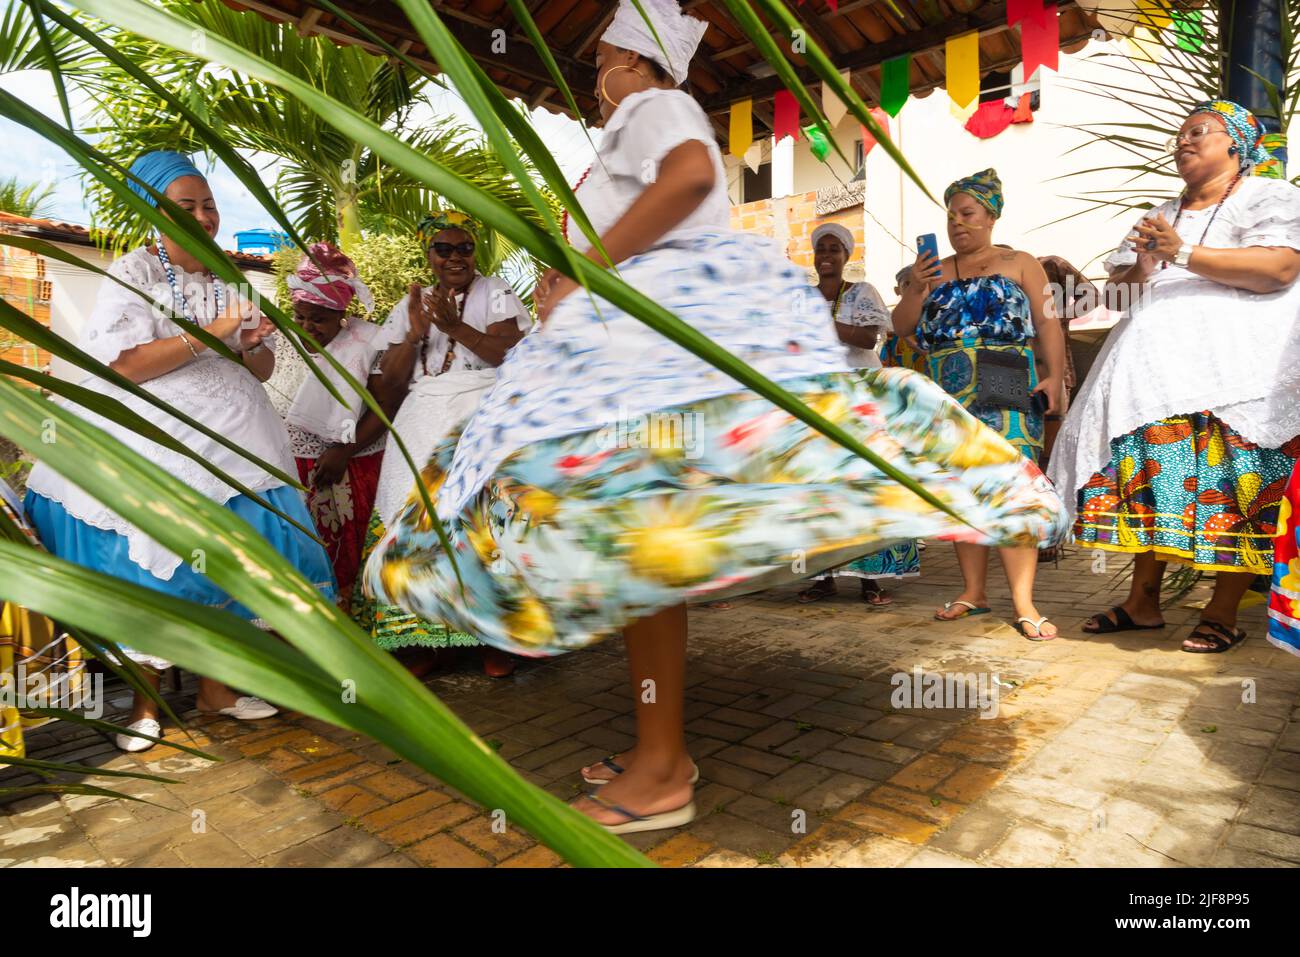 Saubara, Bahia, Brasile - 12 giugno 2020: I membri del Candomble ballano e cantano al festival religioso nel distretto di Bom Jesus dos Poobre, città di Saubara. Foto Stock